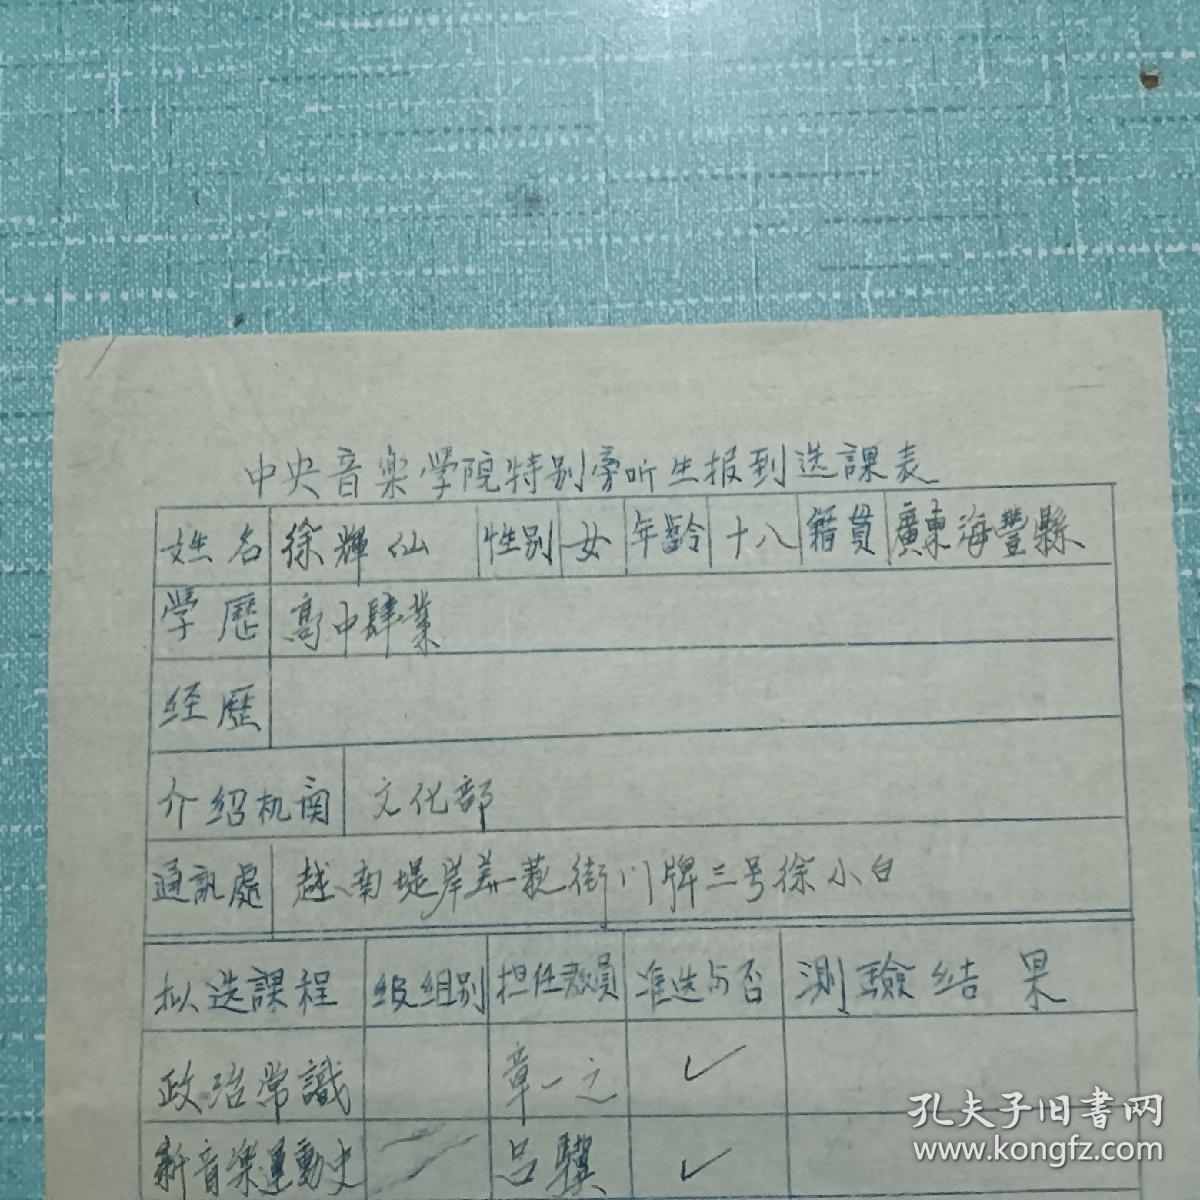 票证单据证书契约：中央音乐学院 特别旁听生报到选课表。 广东省海丰县人、 徐辉仙、 品好。